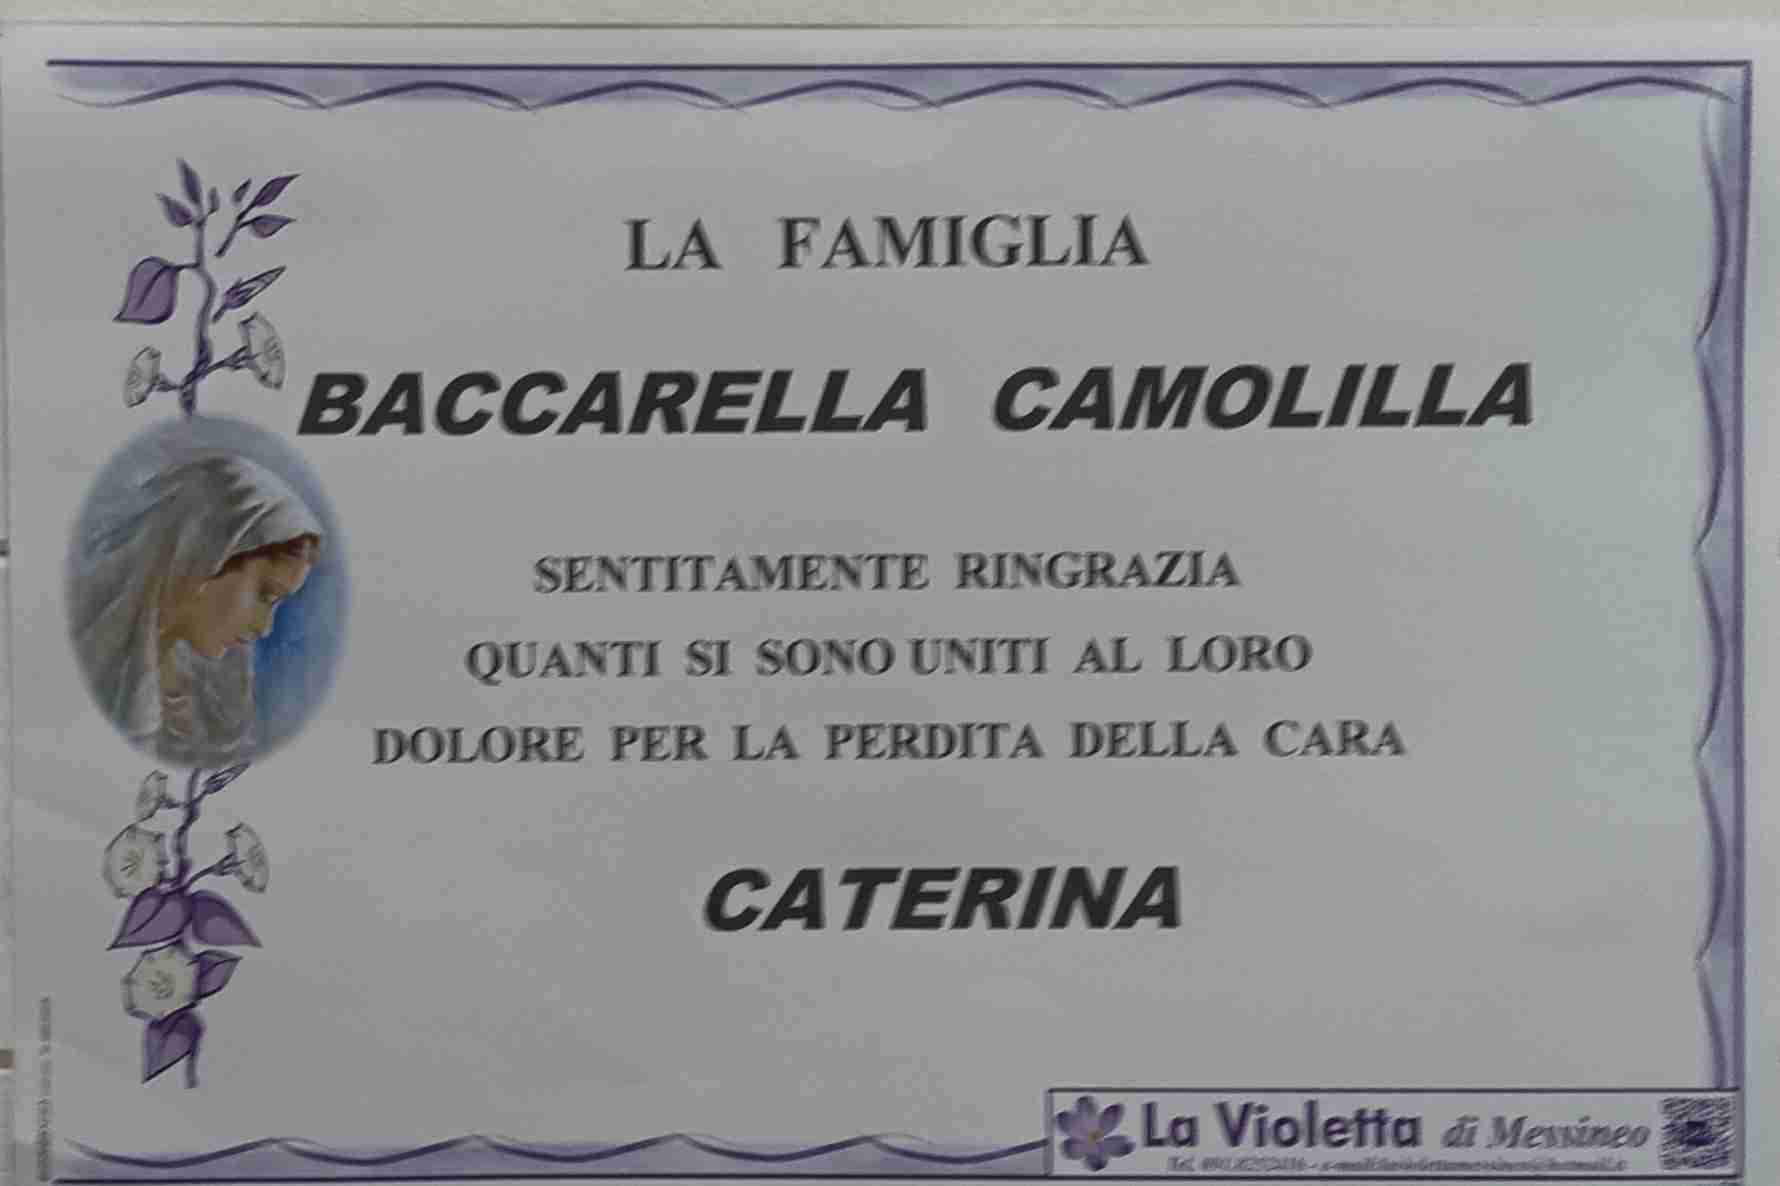 Caterina Camolilla